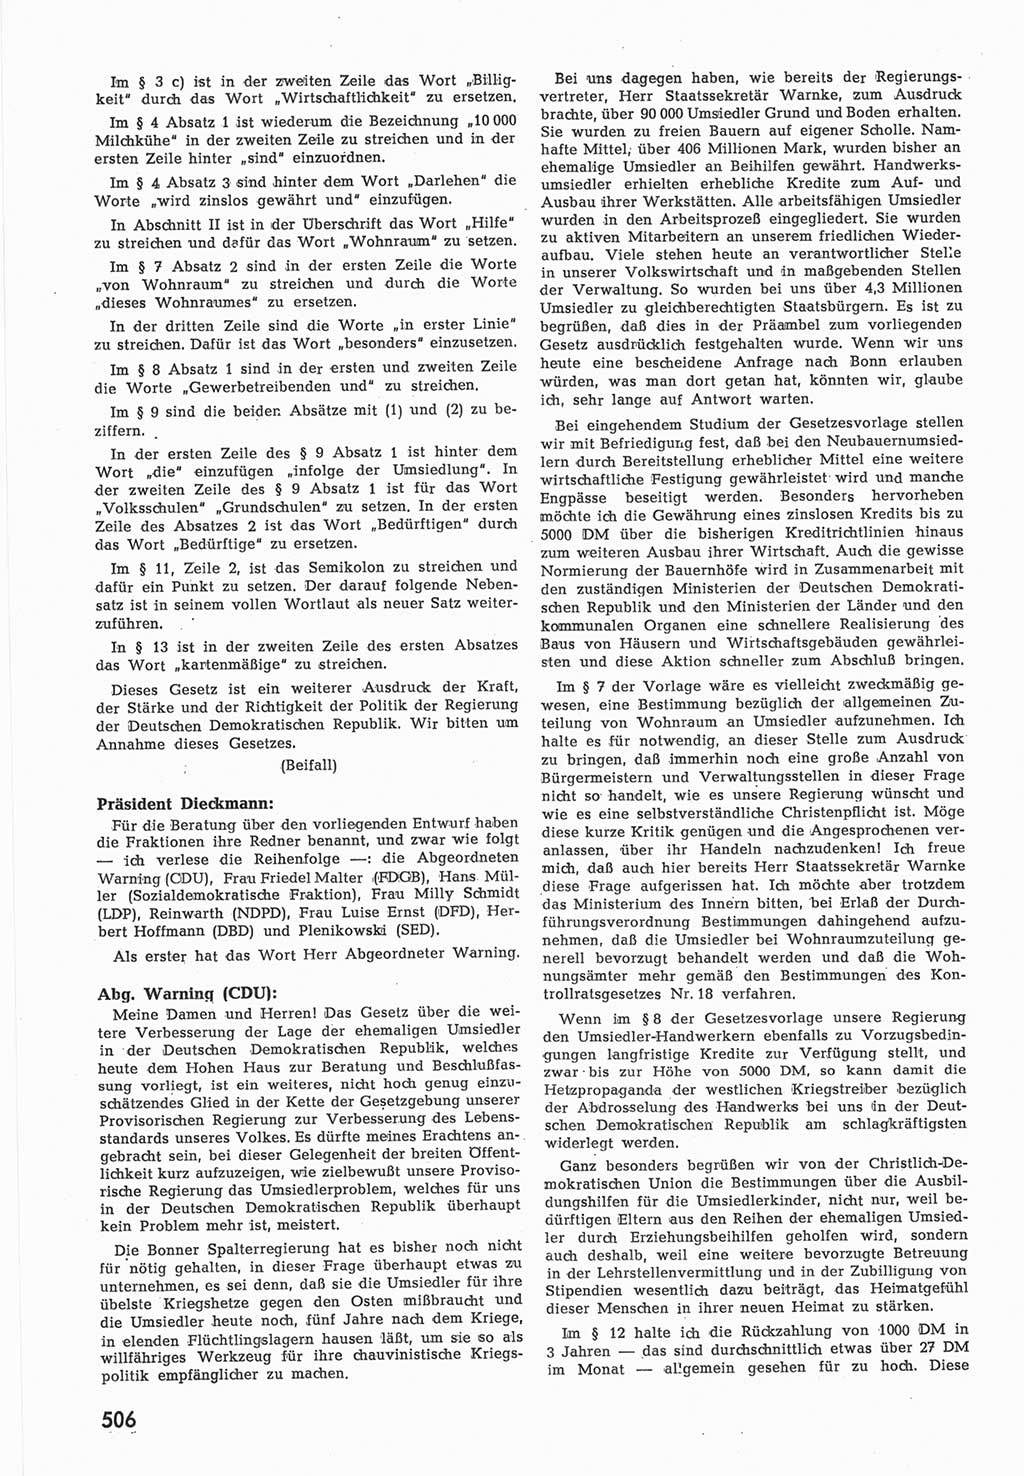 Provisorische Volkskammer (VK) der Deutschen Demokratischen Republik (DDR) 1949-1950, Dokument 524 (Prov. VK DDR 1949-1950, Dok. 524)